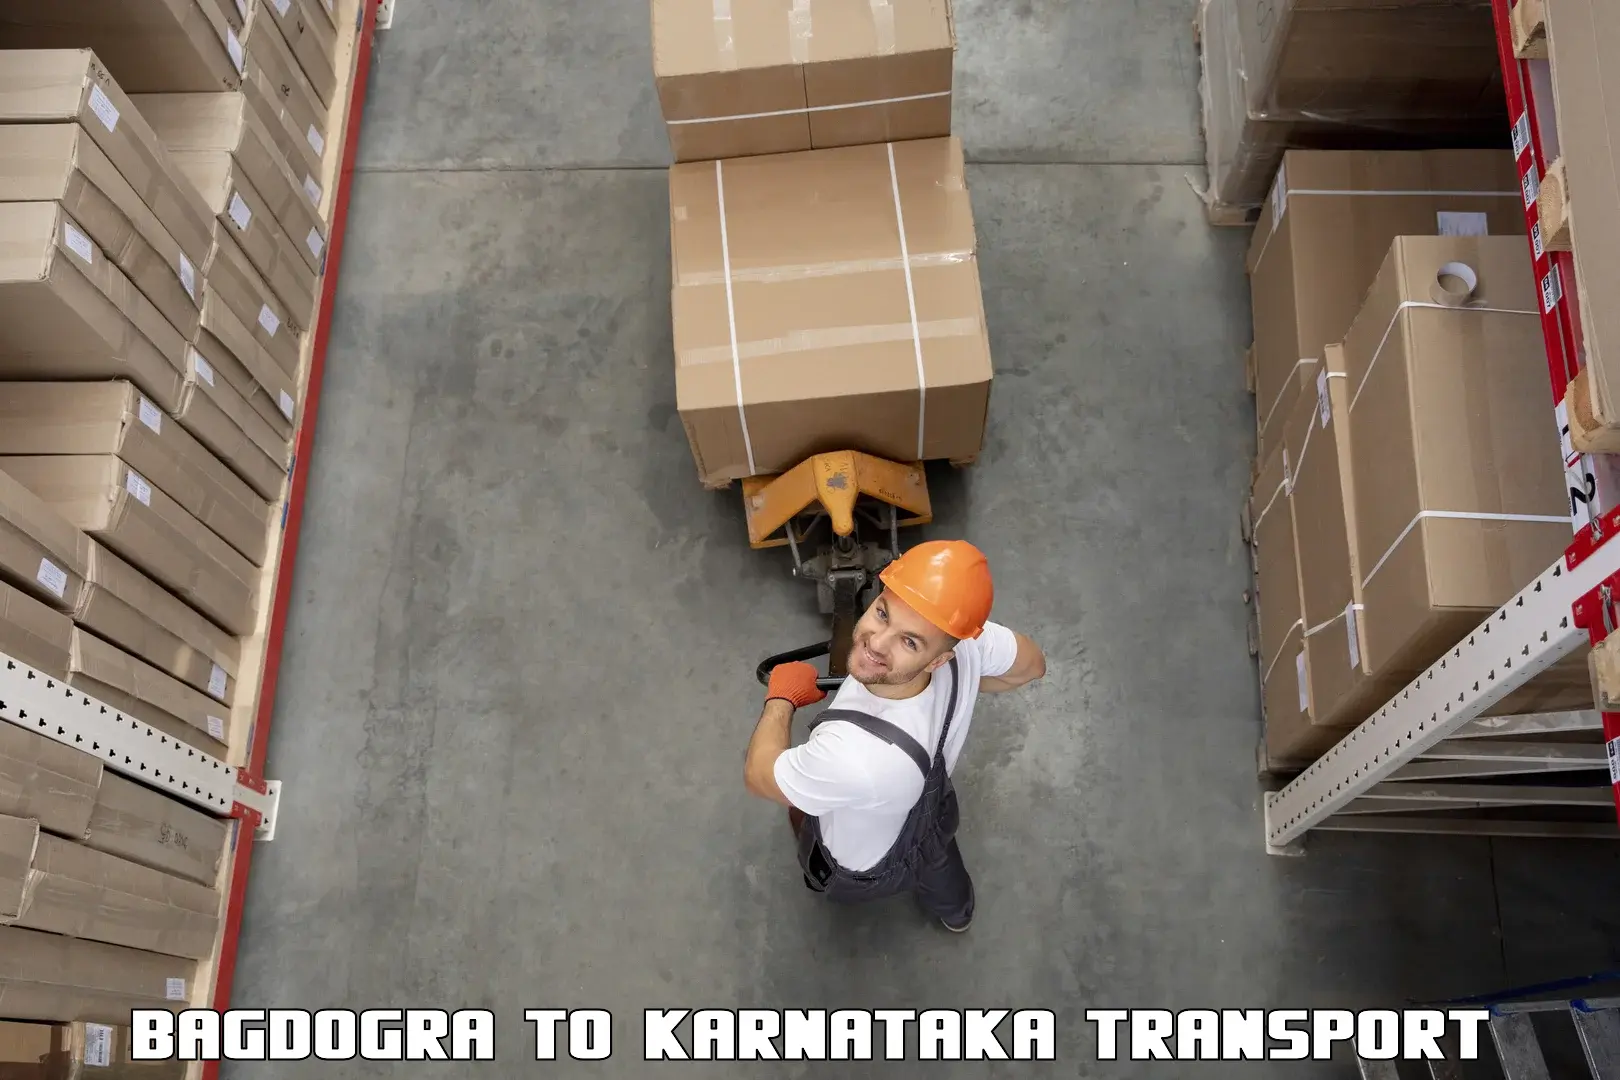 Bike shipping service Bagdogra to Mangalore